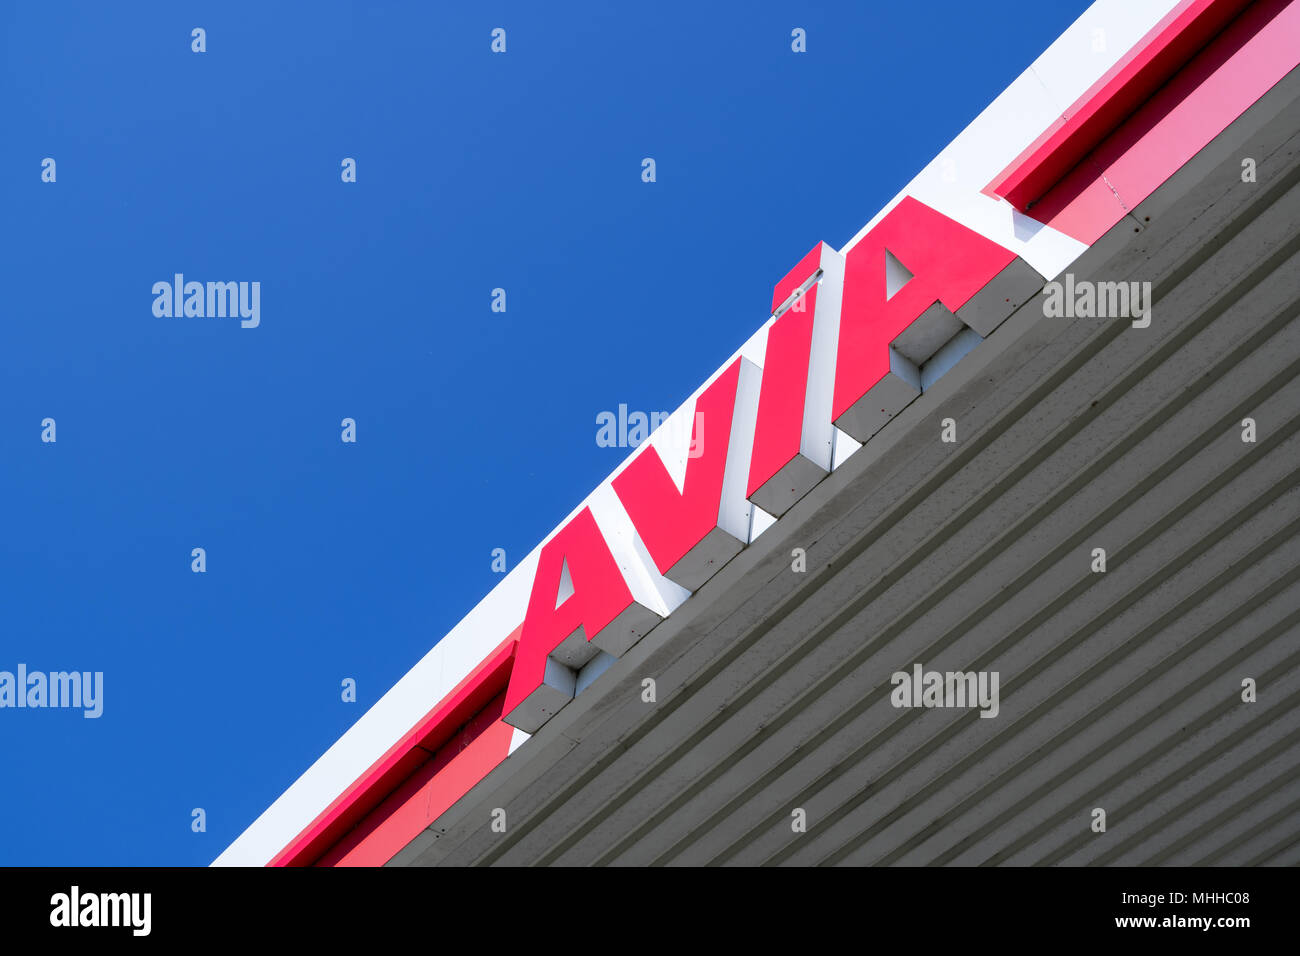 Avia signe en station-service. Avec environ 3 000 stations-service Avia est le plus largement utilisé de l'huile minérale du groupe indépendant de la marque en Europe. Banque D'Images